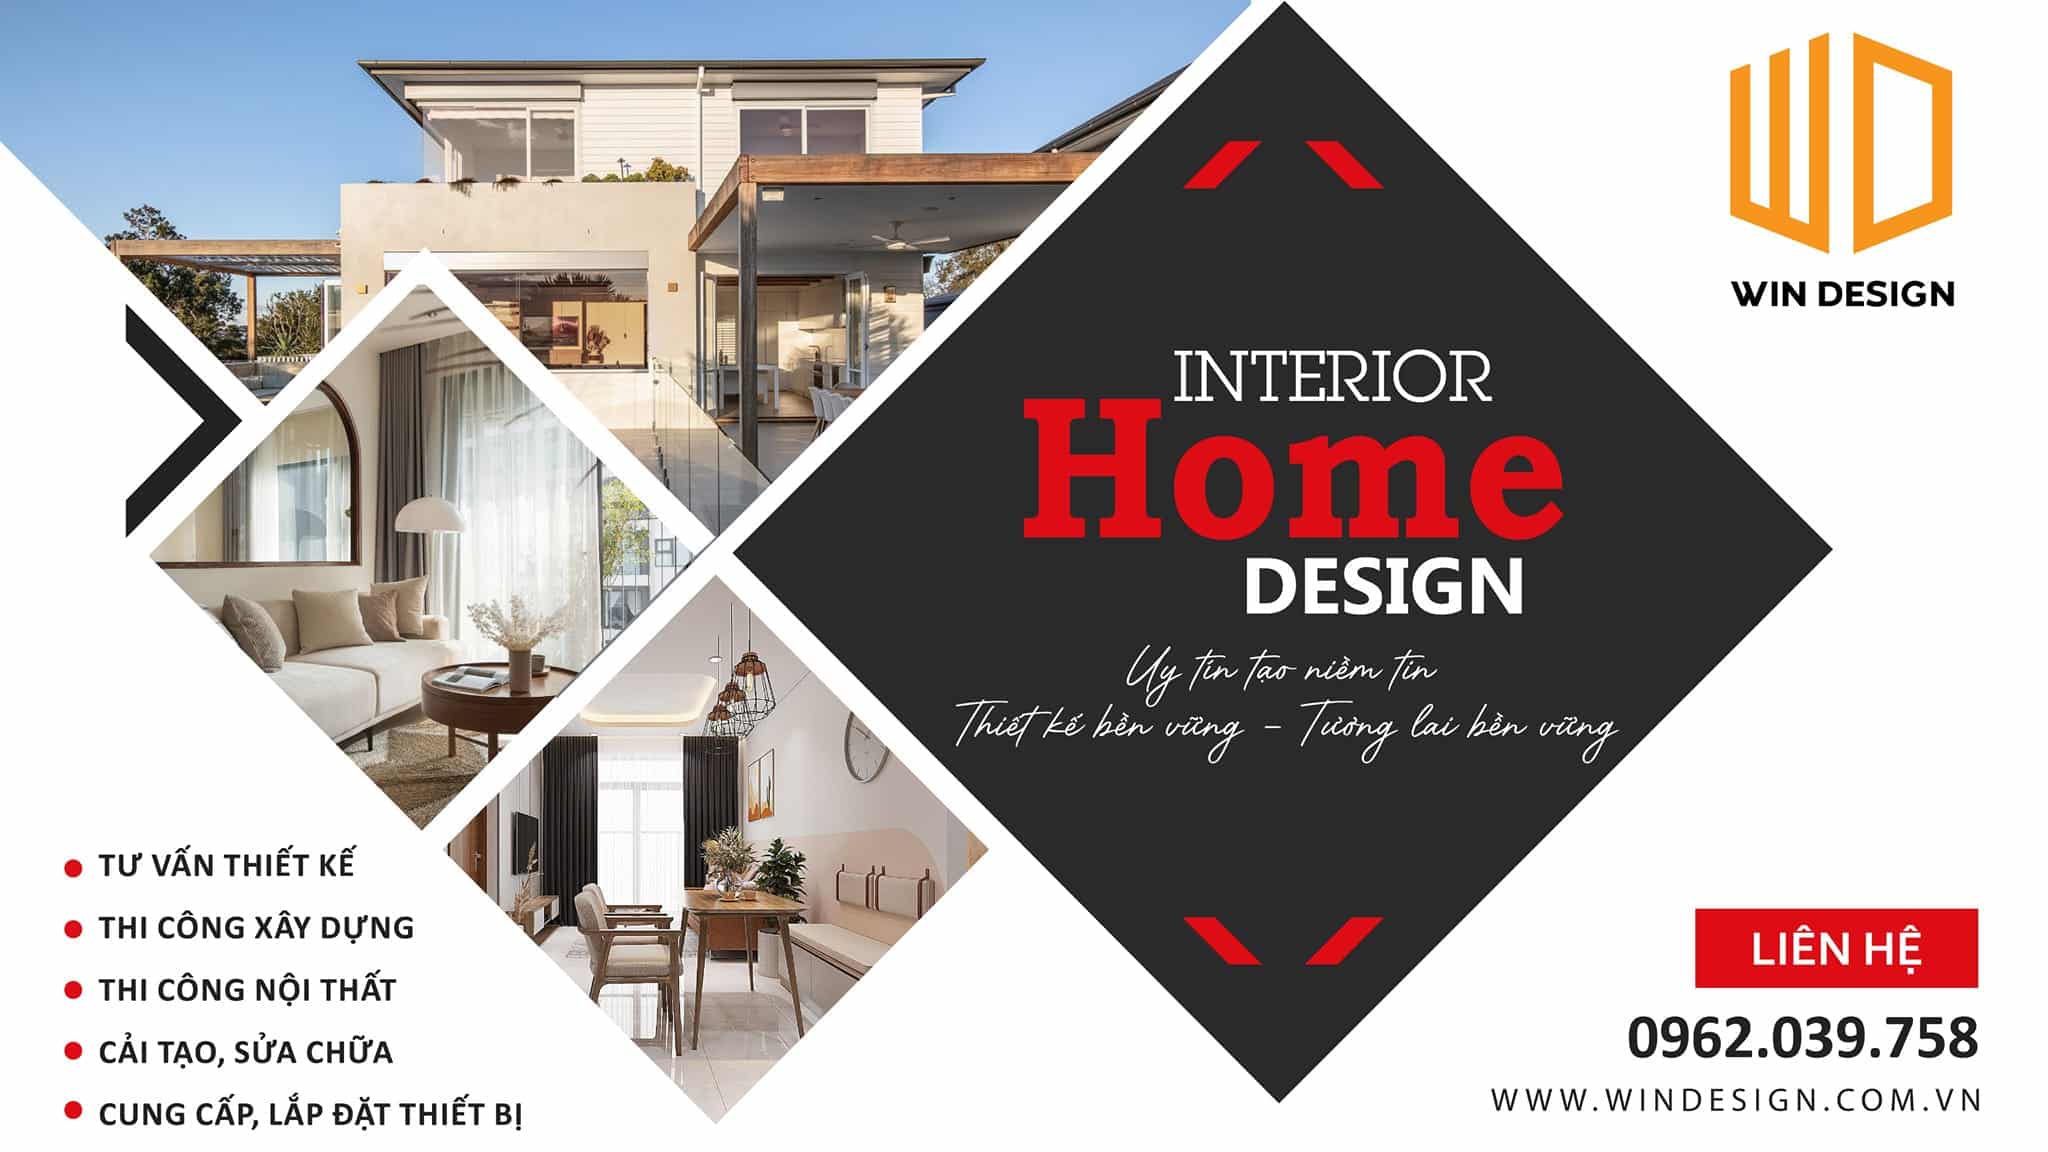 Win Design cung cấp dịch vụ thiết kế nội thất nhà ở uy tín 